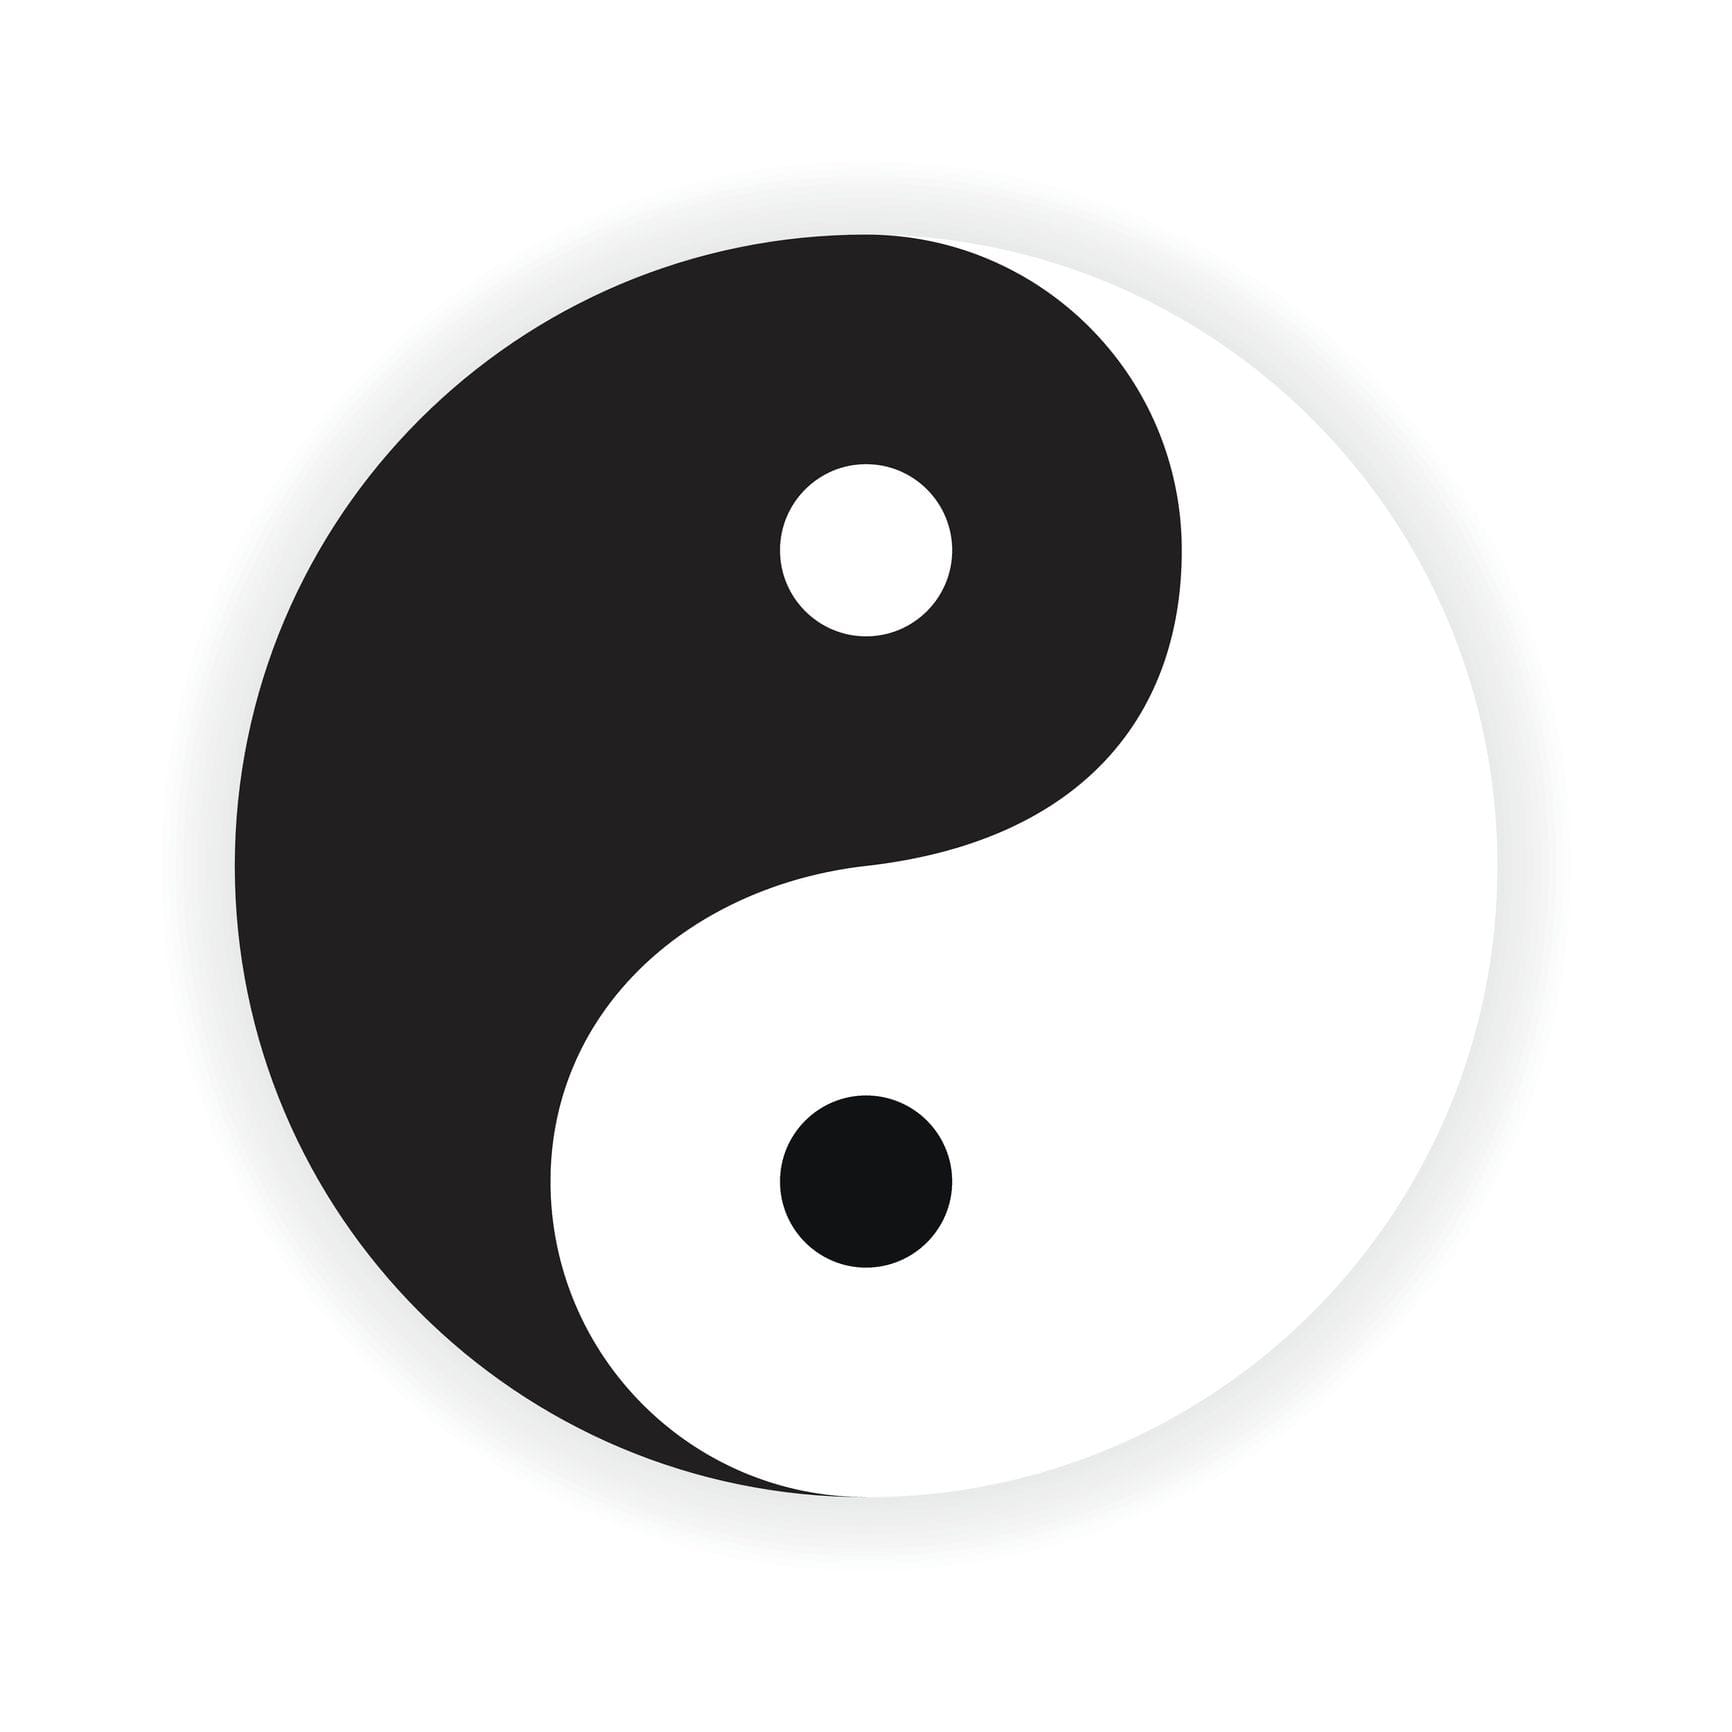 Die weibliche schwarze Seite (Yin) steht für das passive und die männliche weiße Seite (Yang) für das aktive.